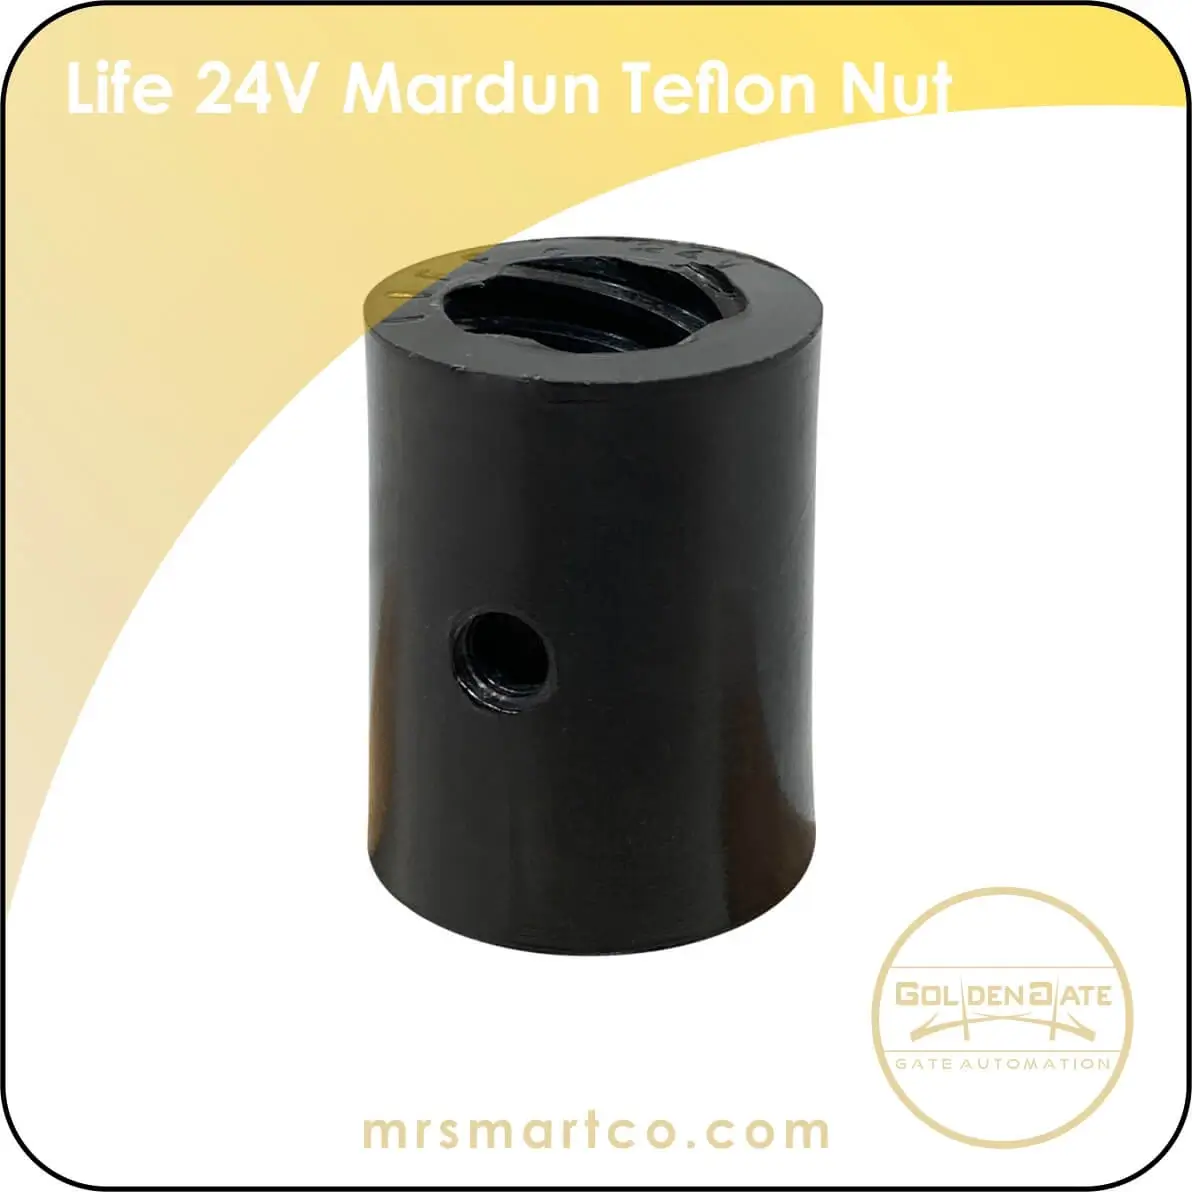 Life 24V Mardun Teflon Nut